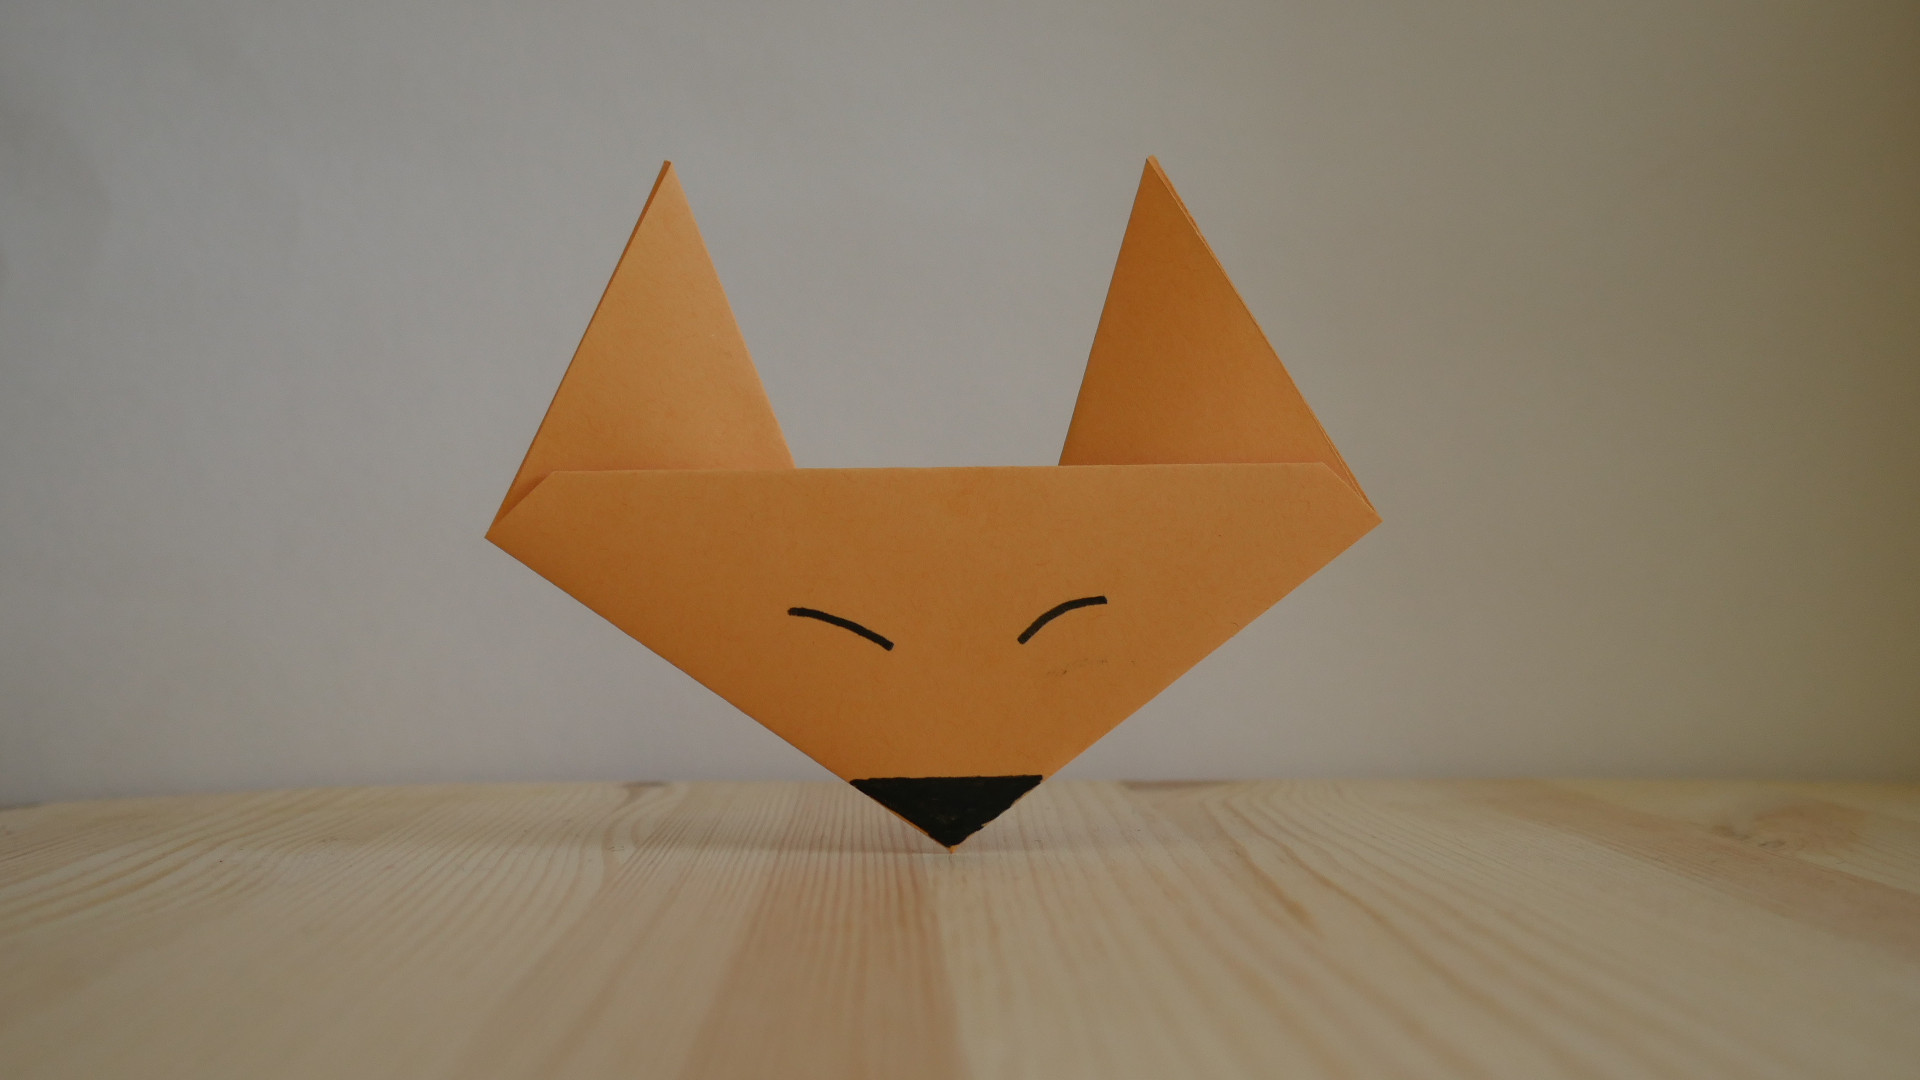 Оригами. Как сделать лису из бумаги (видео урок)